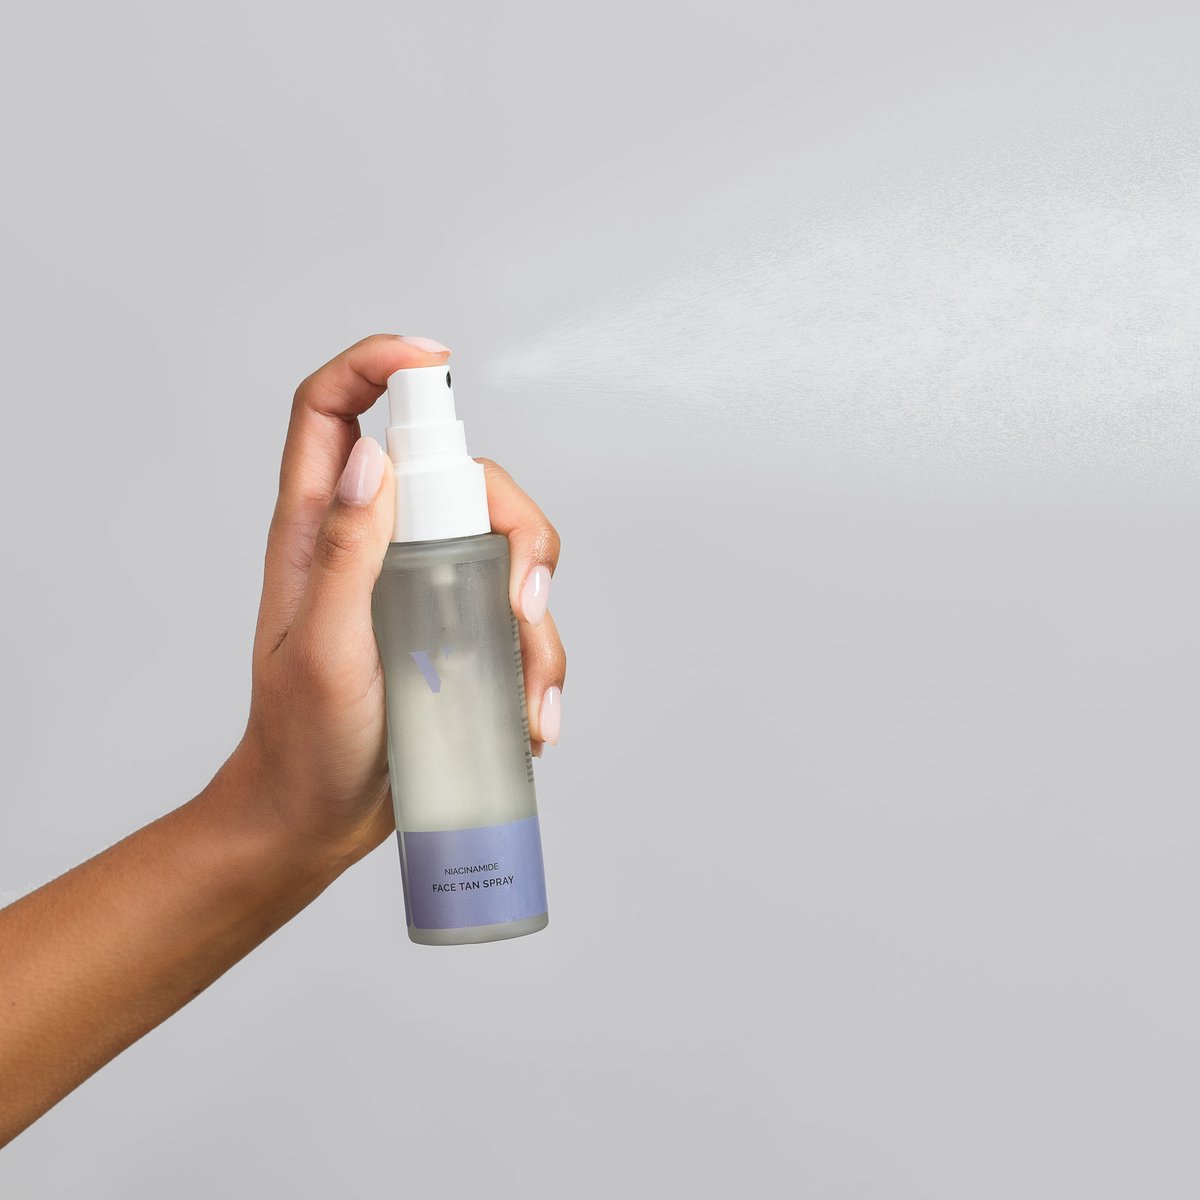 Venice Body - Face tan spray - Zelfbruinerspray met niacinamide - zelfbruiner in spray voor het gezicht - huidverbeterend